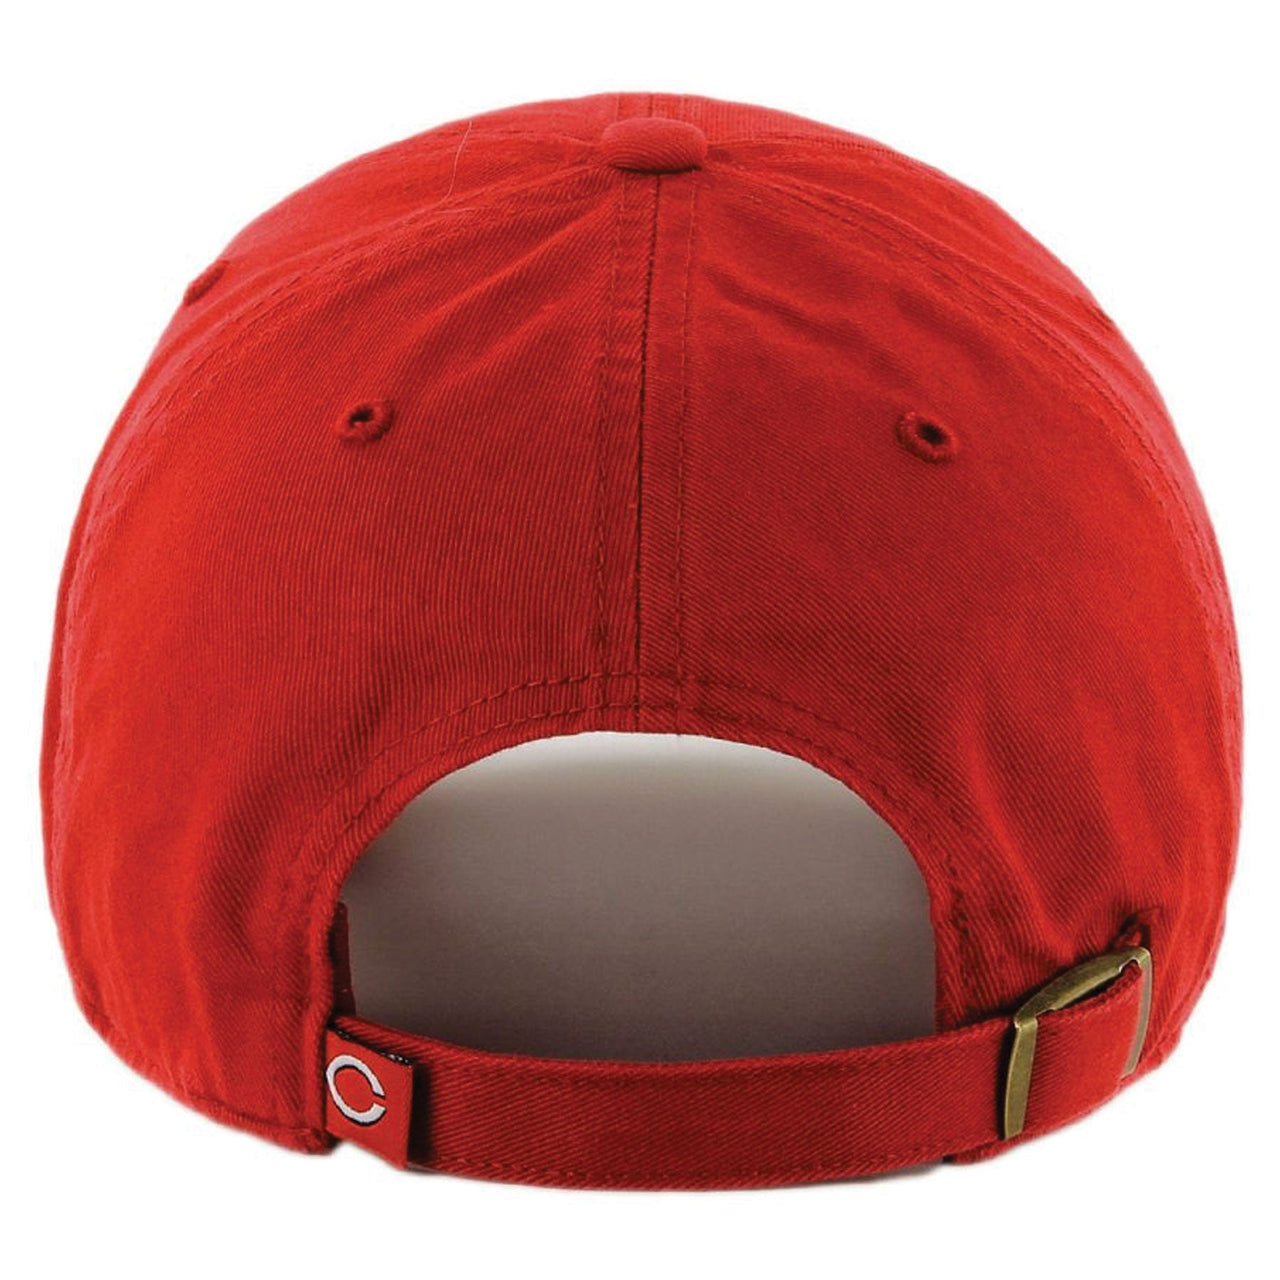 Cincinnati Reds Red/Black Two Tone Adjustable Baseball Cap